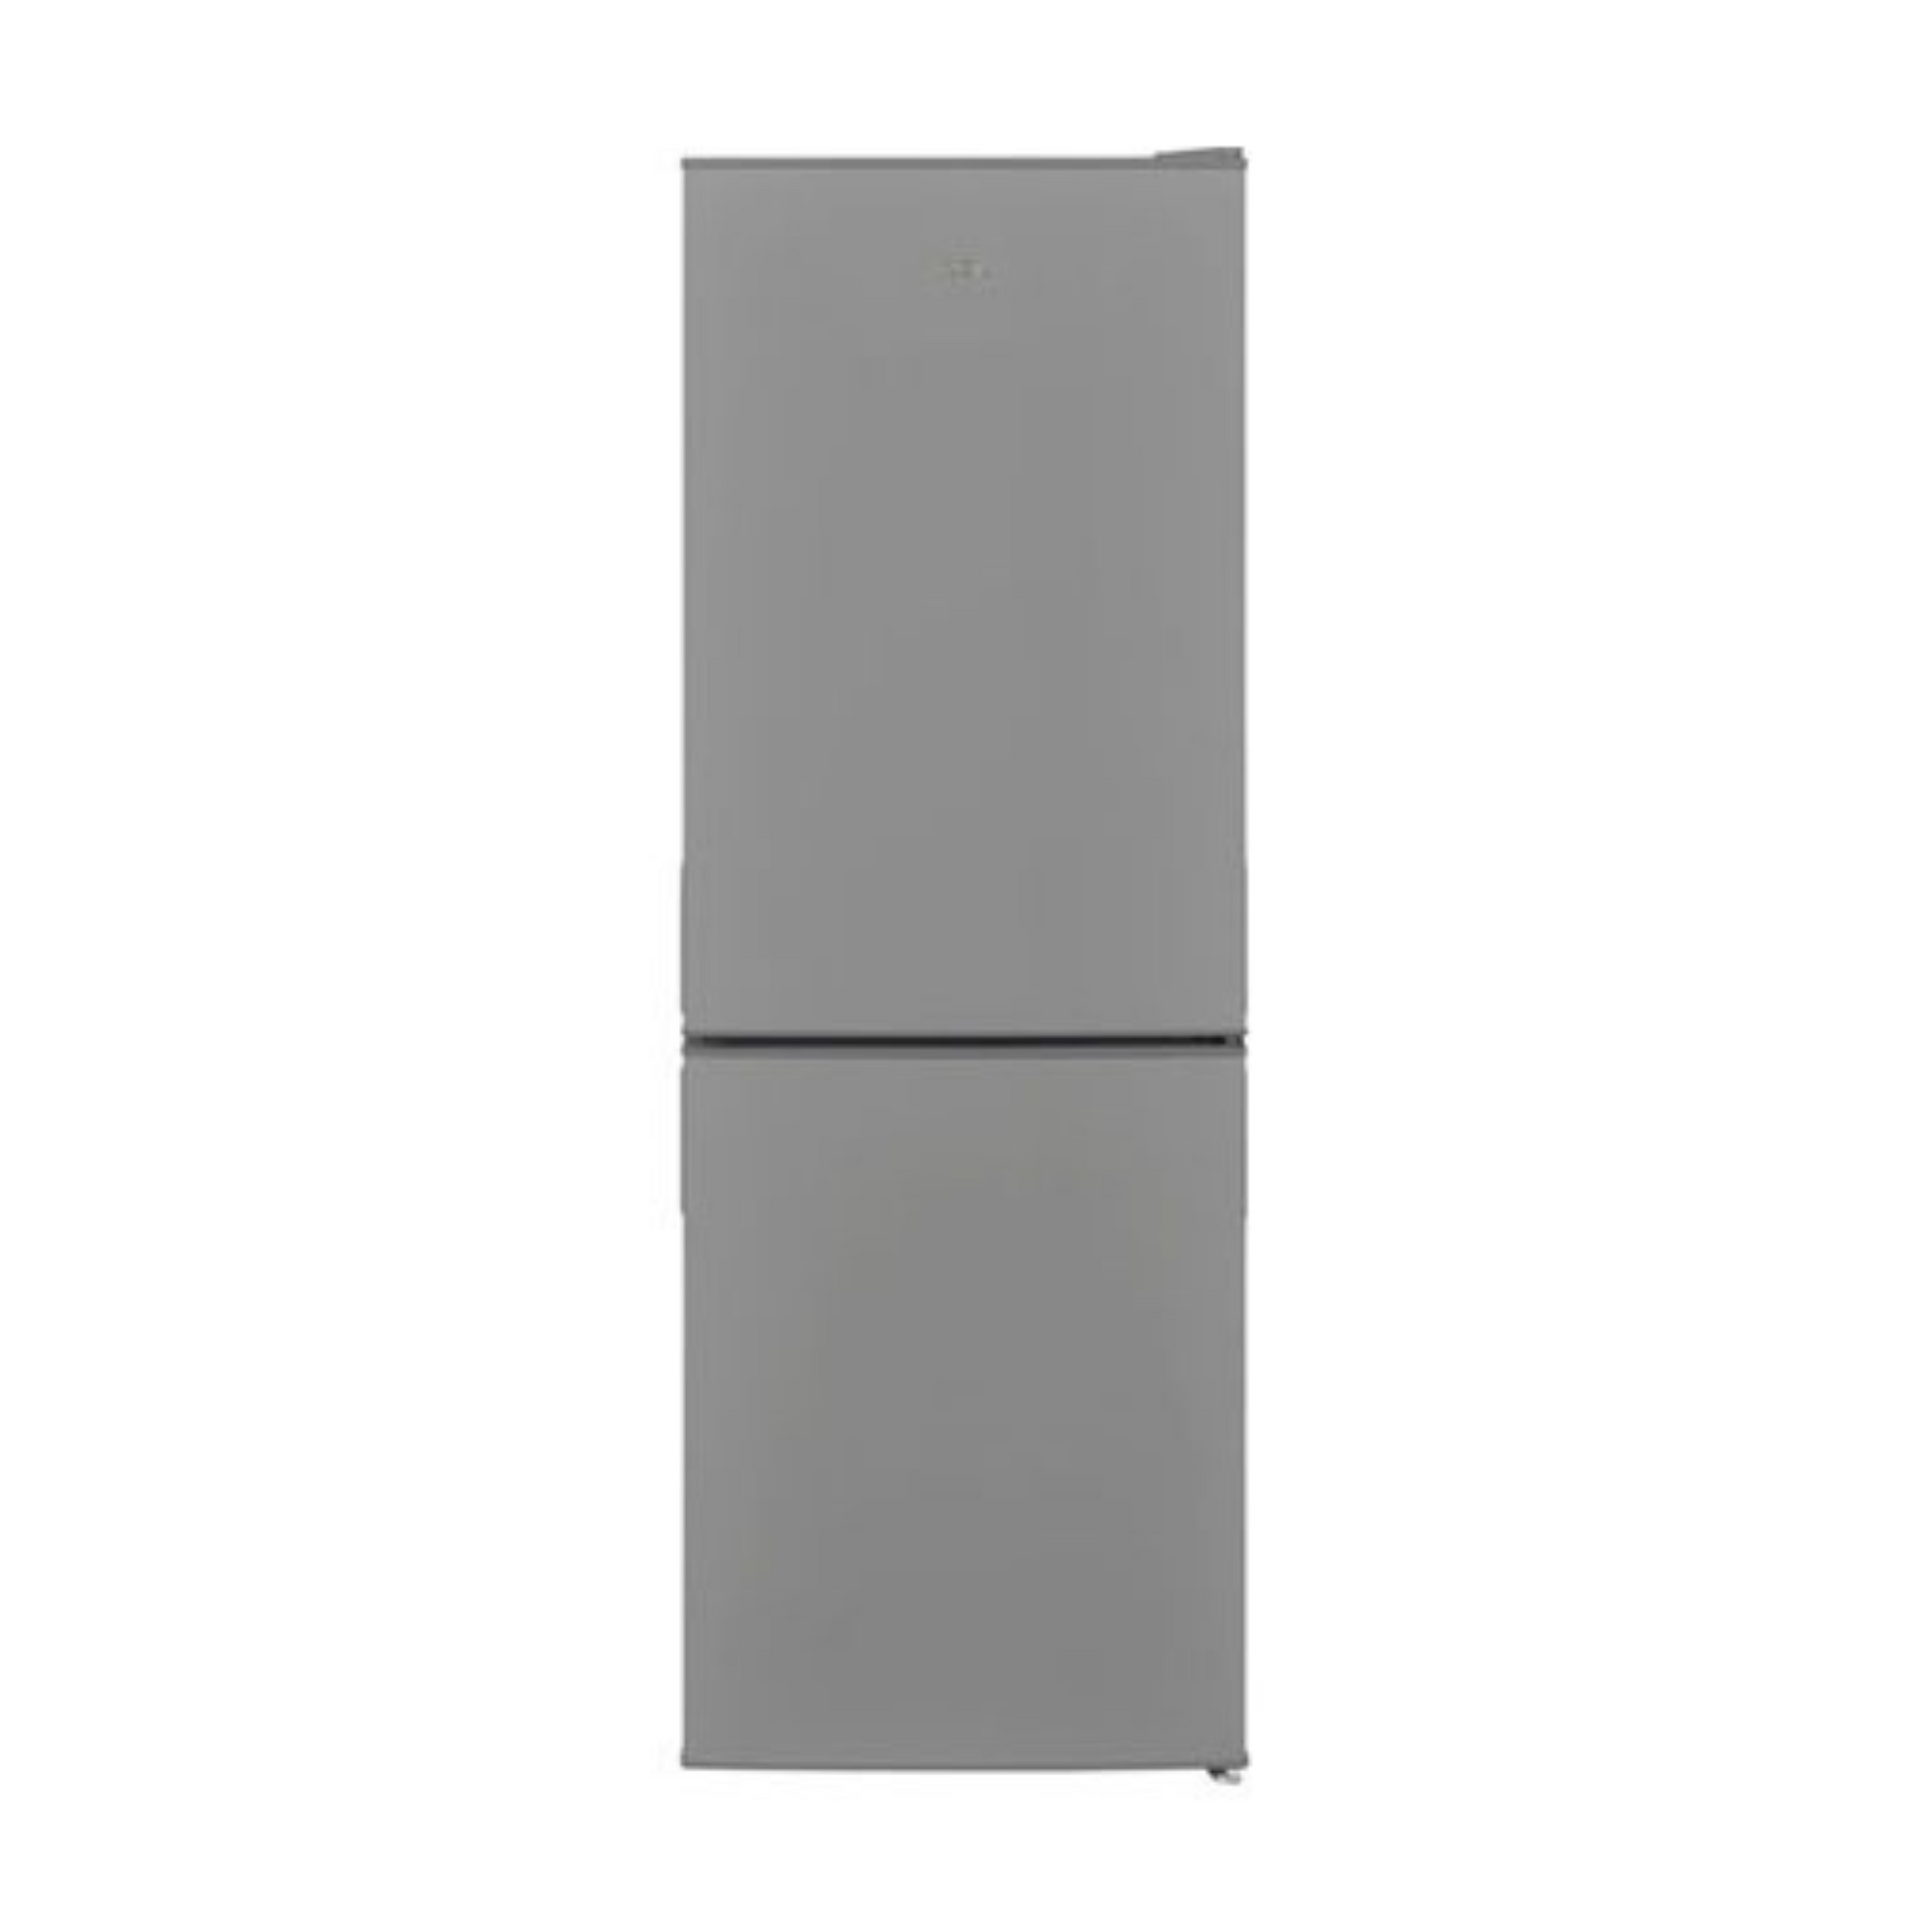 Logik 164L Double Door Refrigerator, LFC50S22